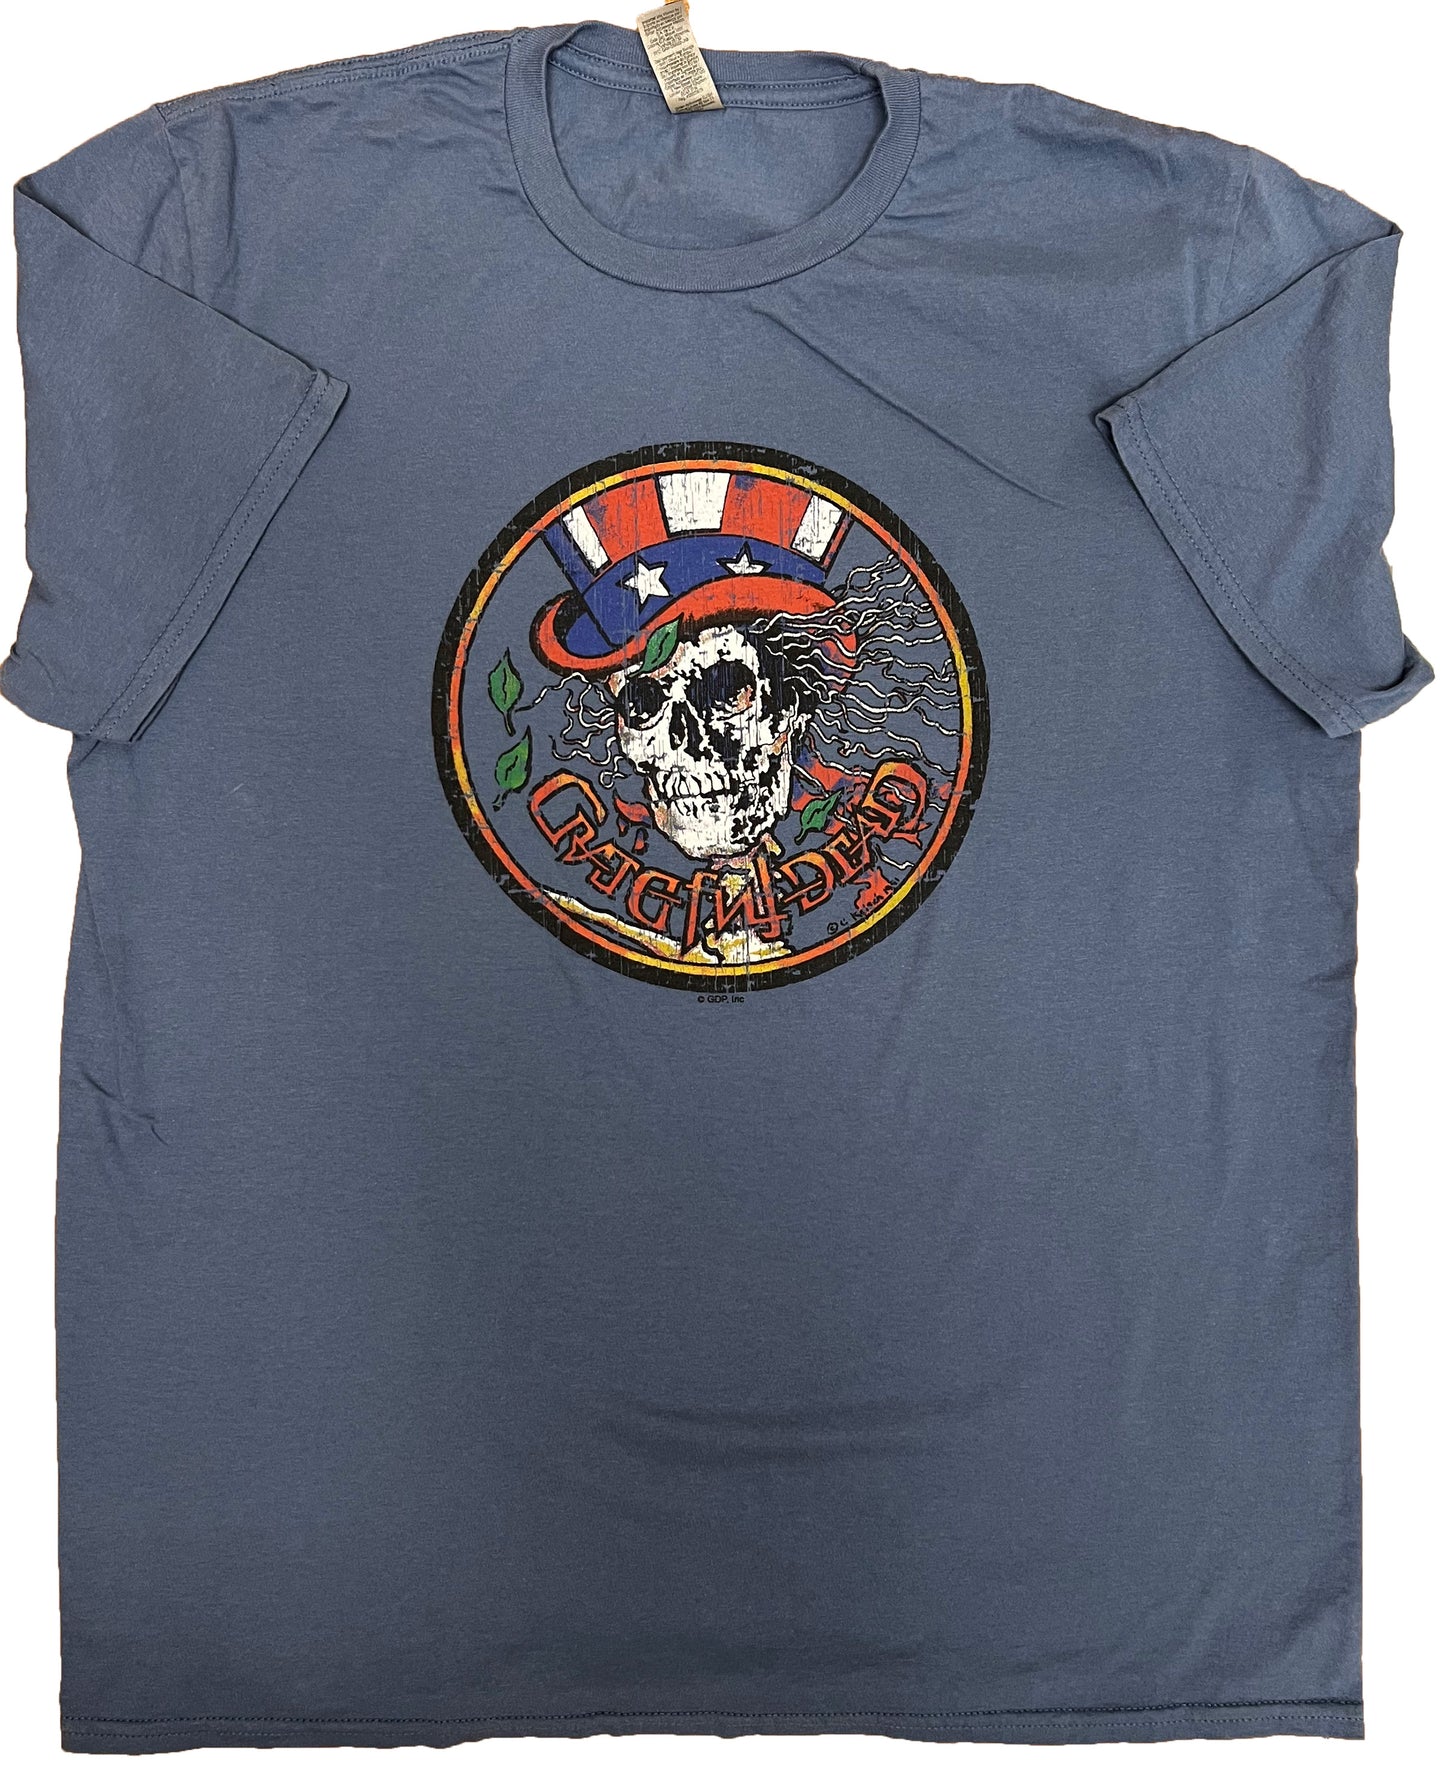 Grateful Dead Psycle Sam Vintage Shirt